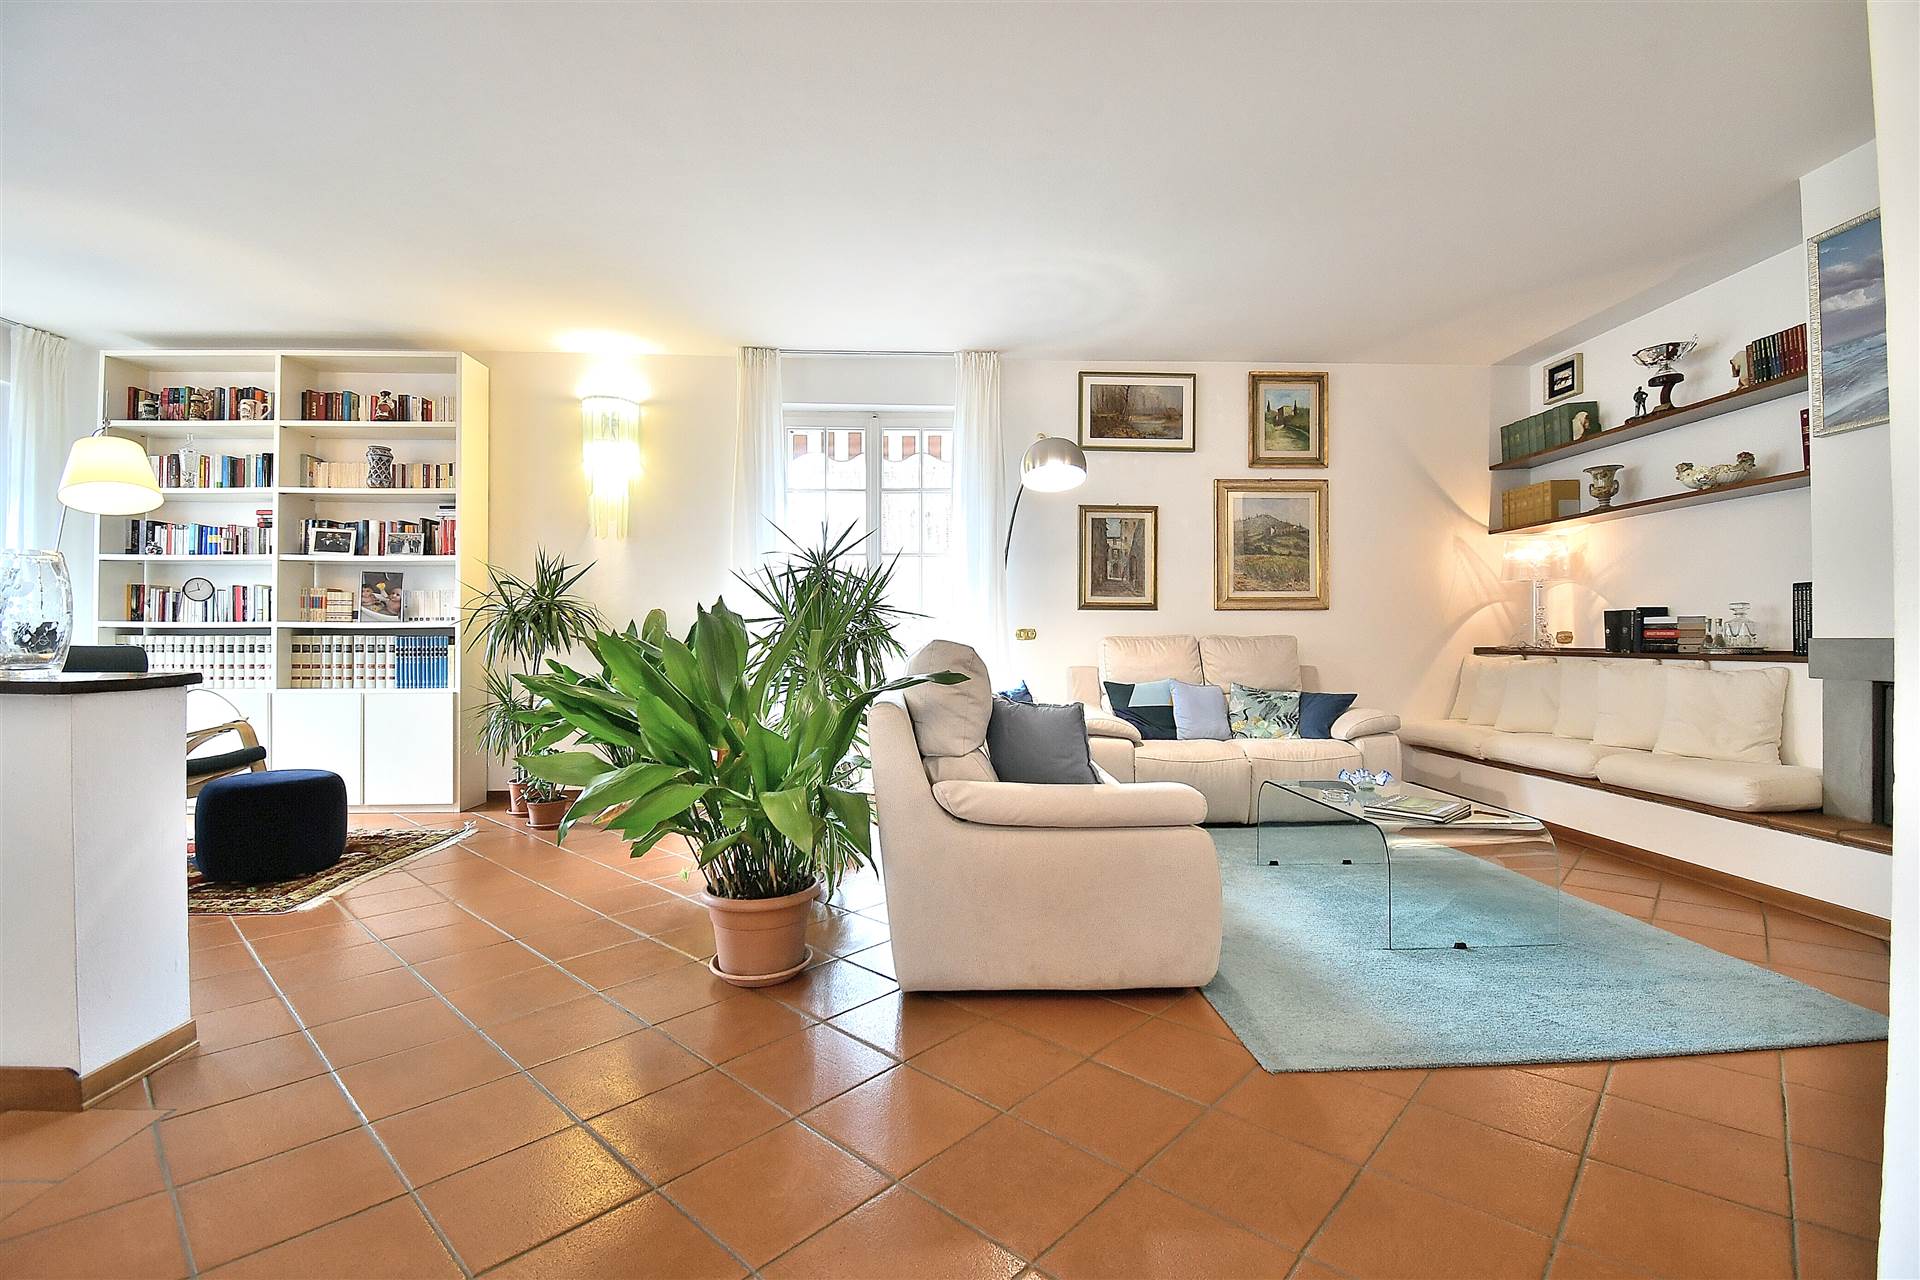 Monteroni d'Arbia, in piacevole contesto residenziale, proponiamo splendido appartamento con ampio giardino privato all'interno di una bella villetta 